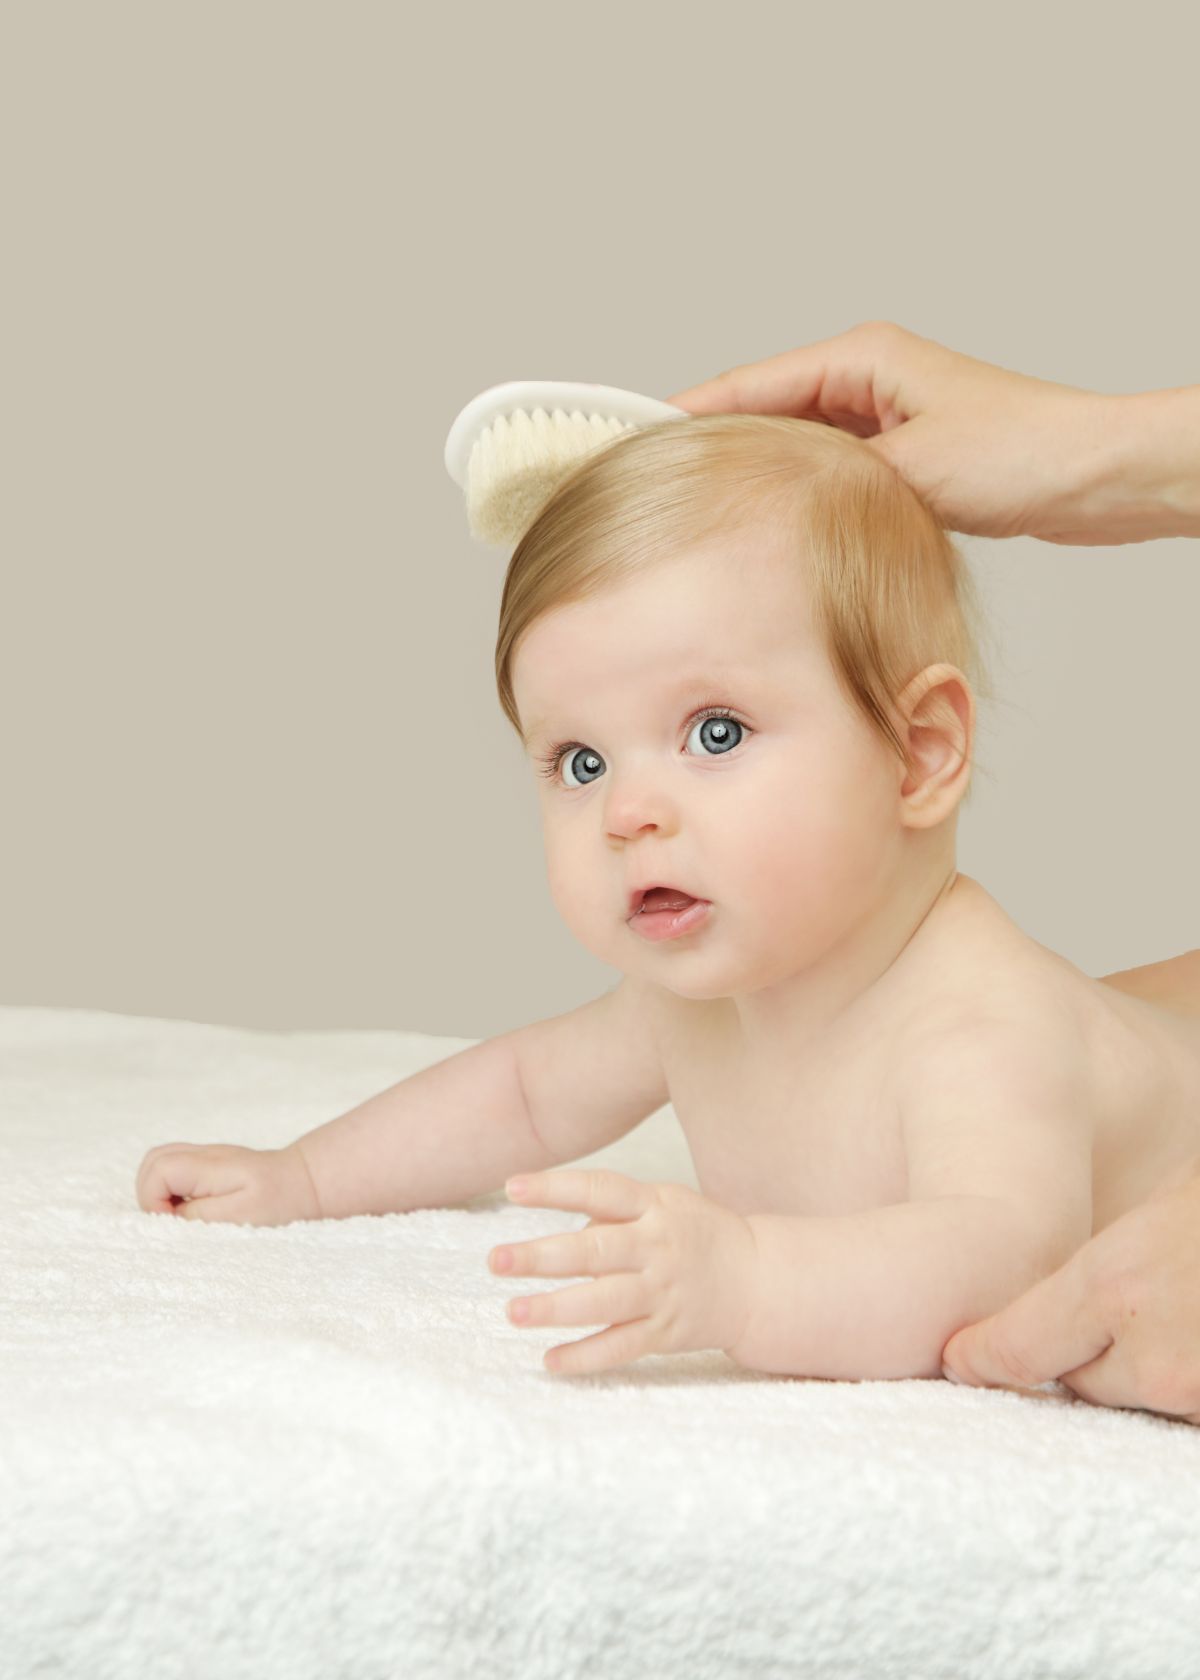 10 Best Baby Hair Brush Reviewed in 2023